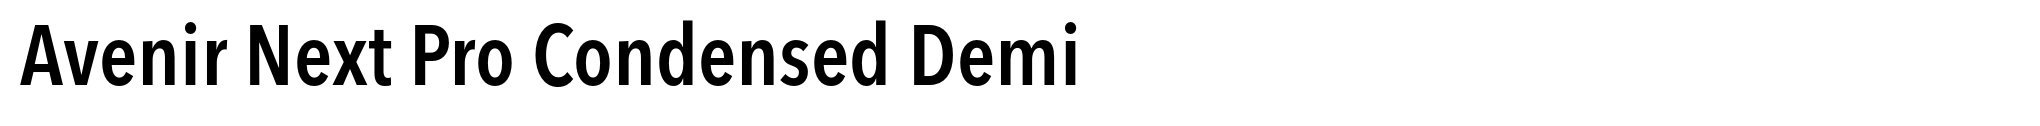 Avenir Next Pro Condensed Demi image